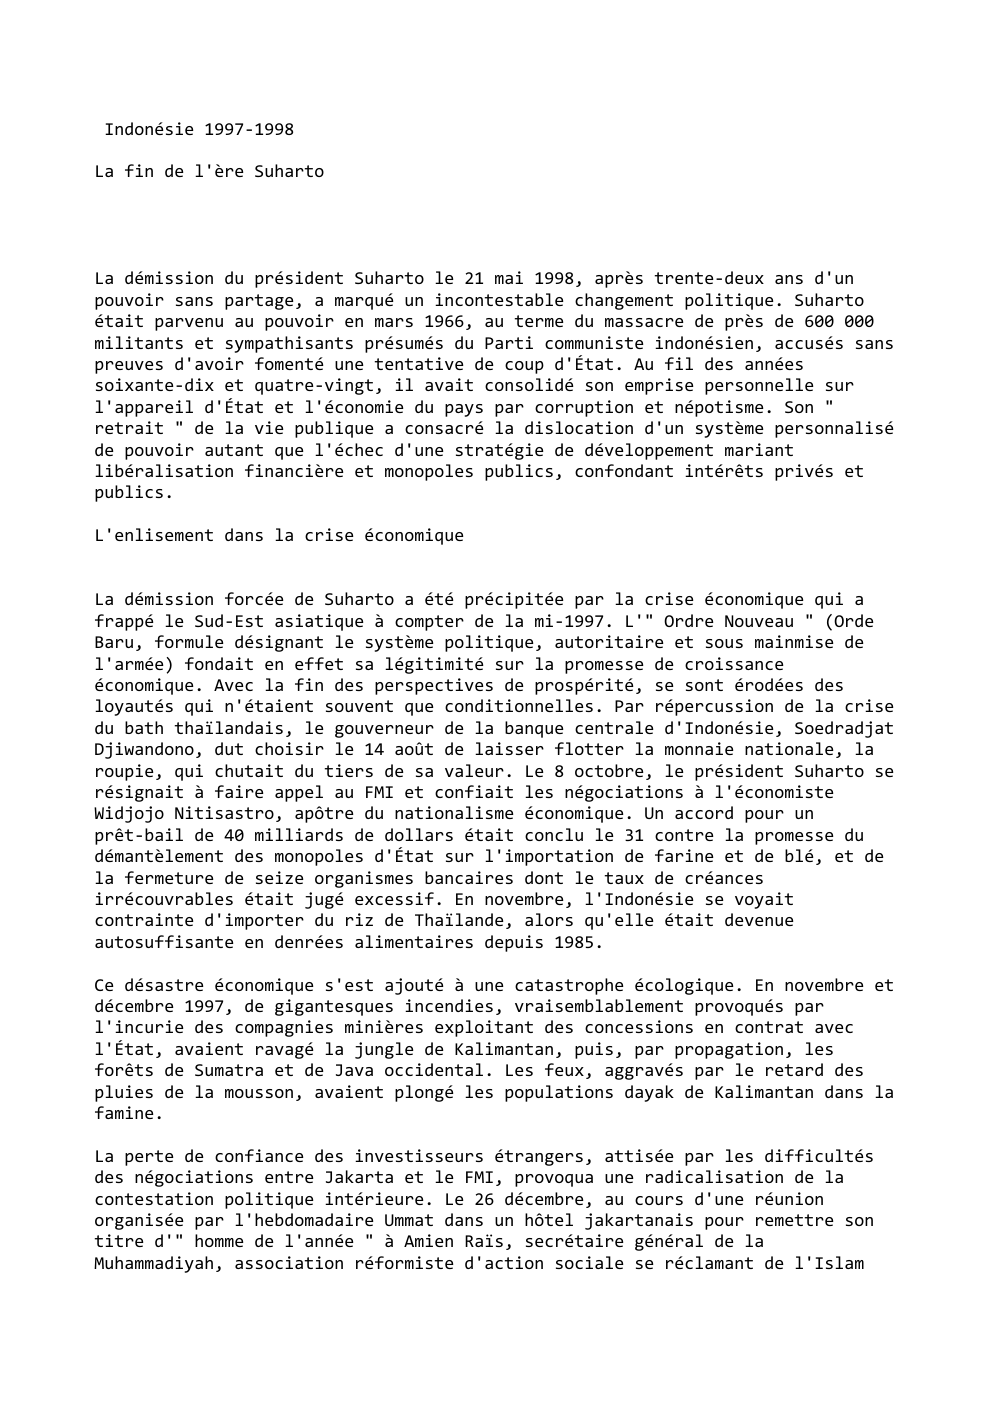 Prévisualisation du document Indonésie 1997-1998
La fin de l'ère Suharto

La démission du président Suharto le 21 mai 1998, après trente-deux ans d'un...